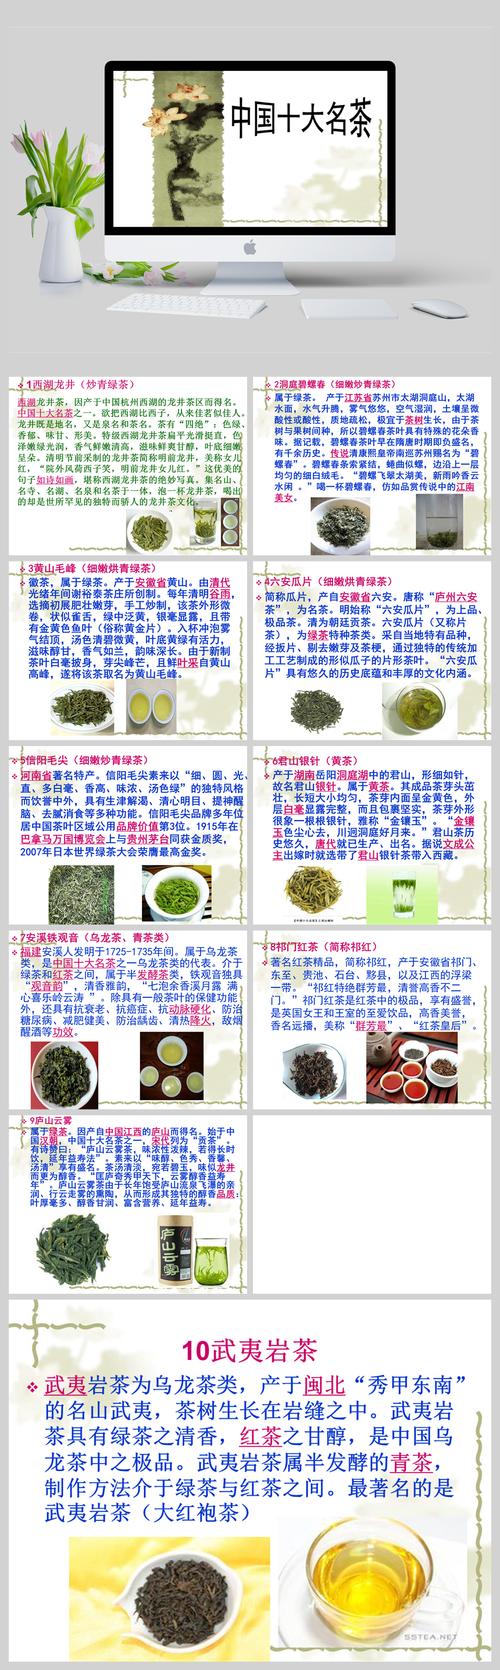 中国的10大名茶和贵州的10大名茶简介